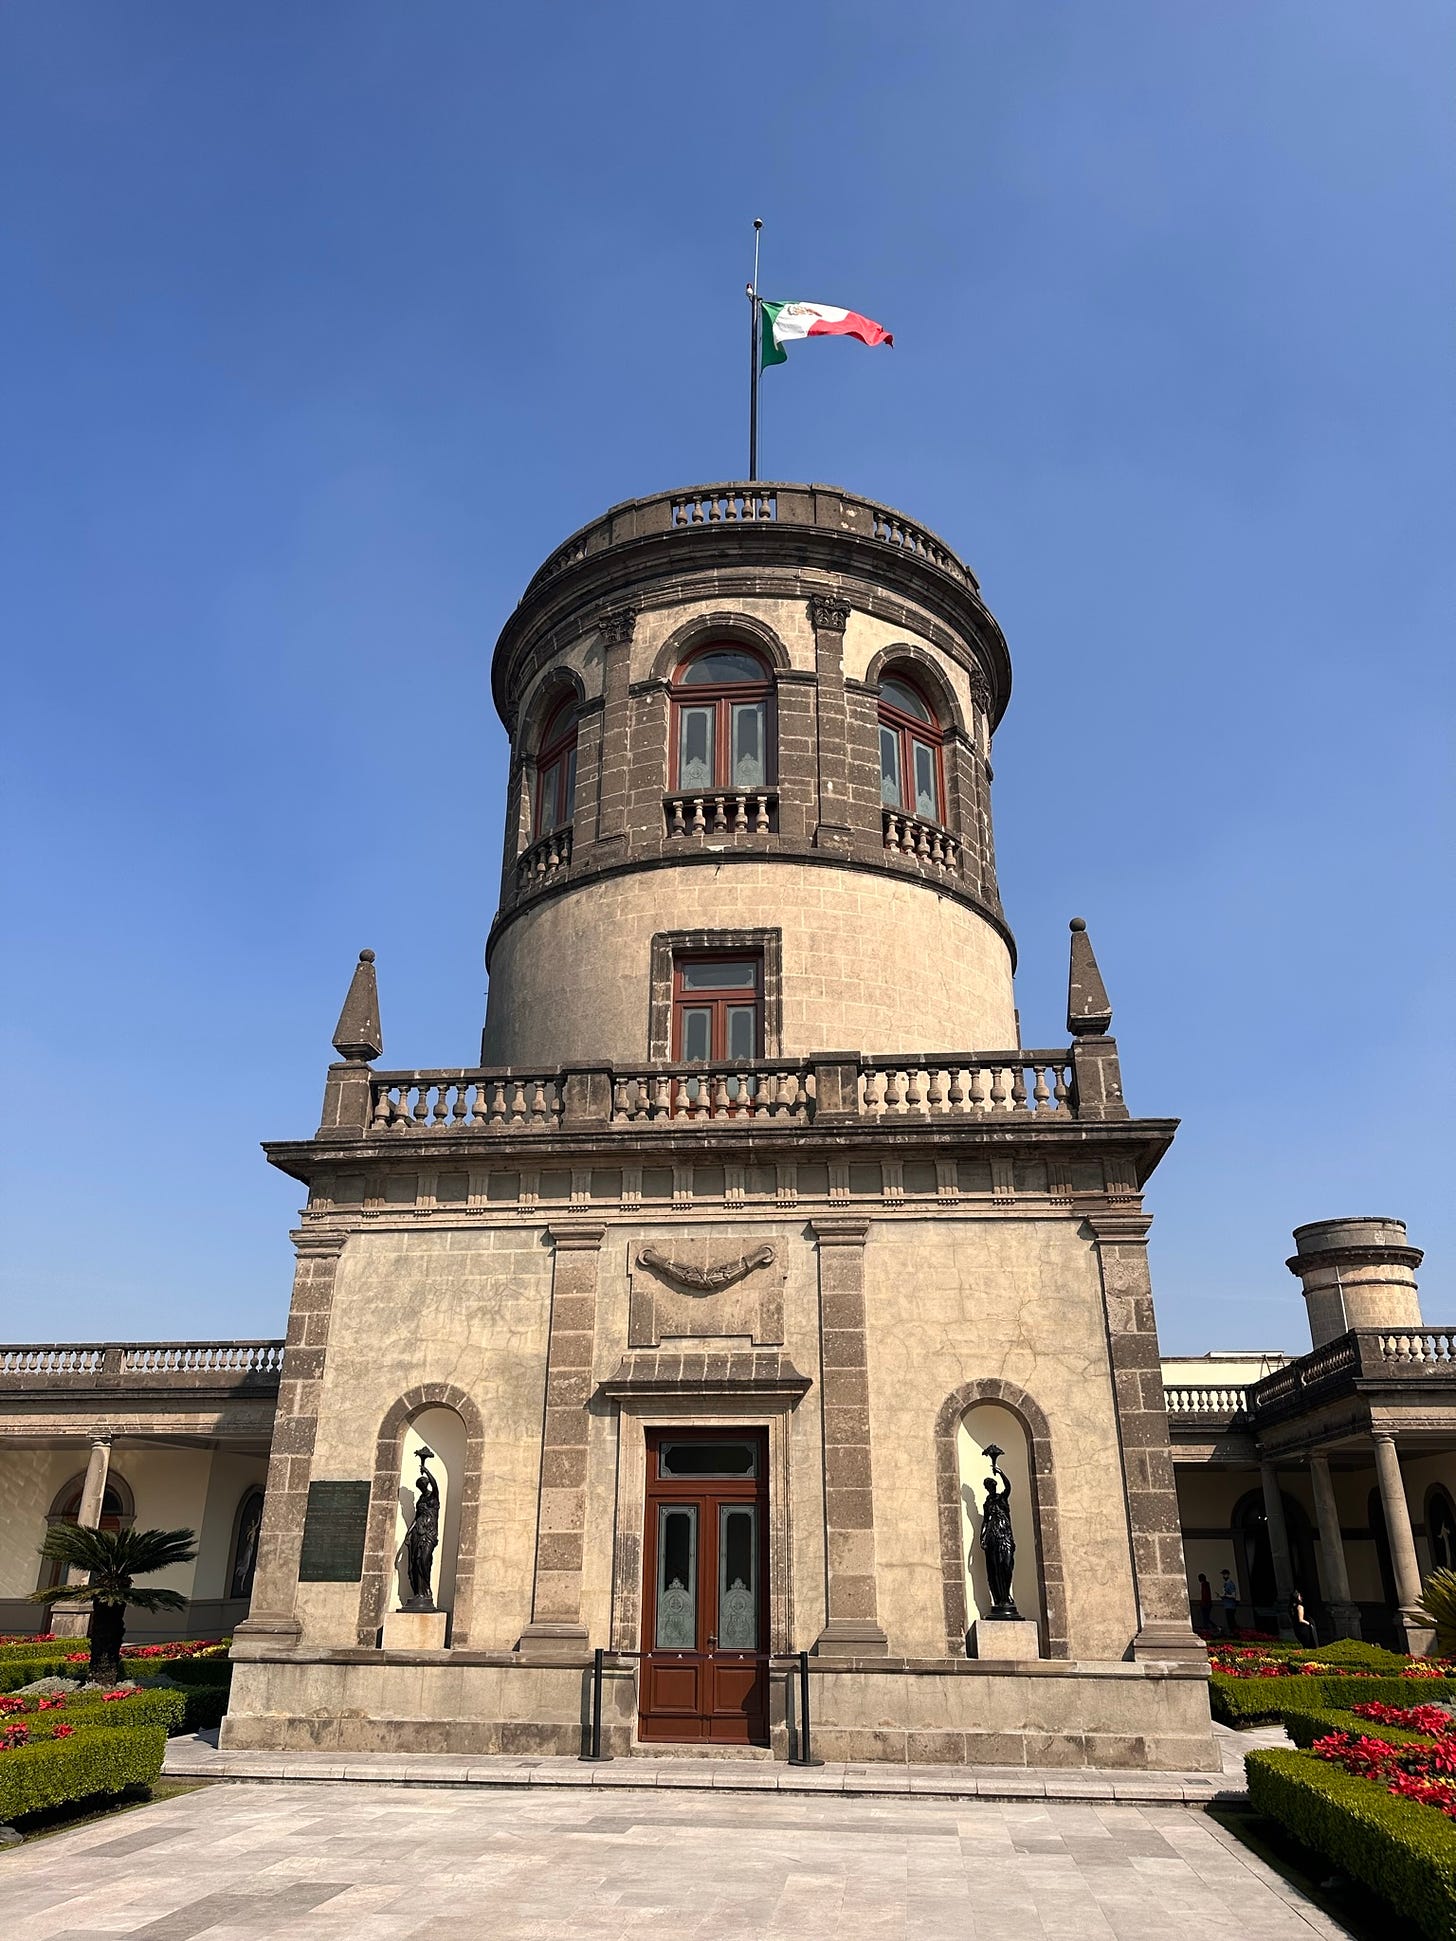 El Castillo de Chapultepec in Mexico City